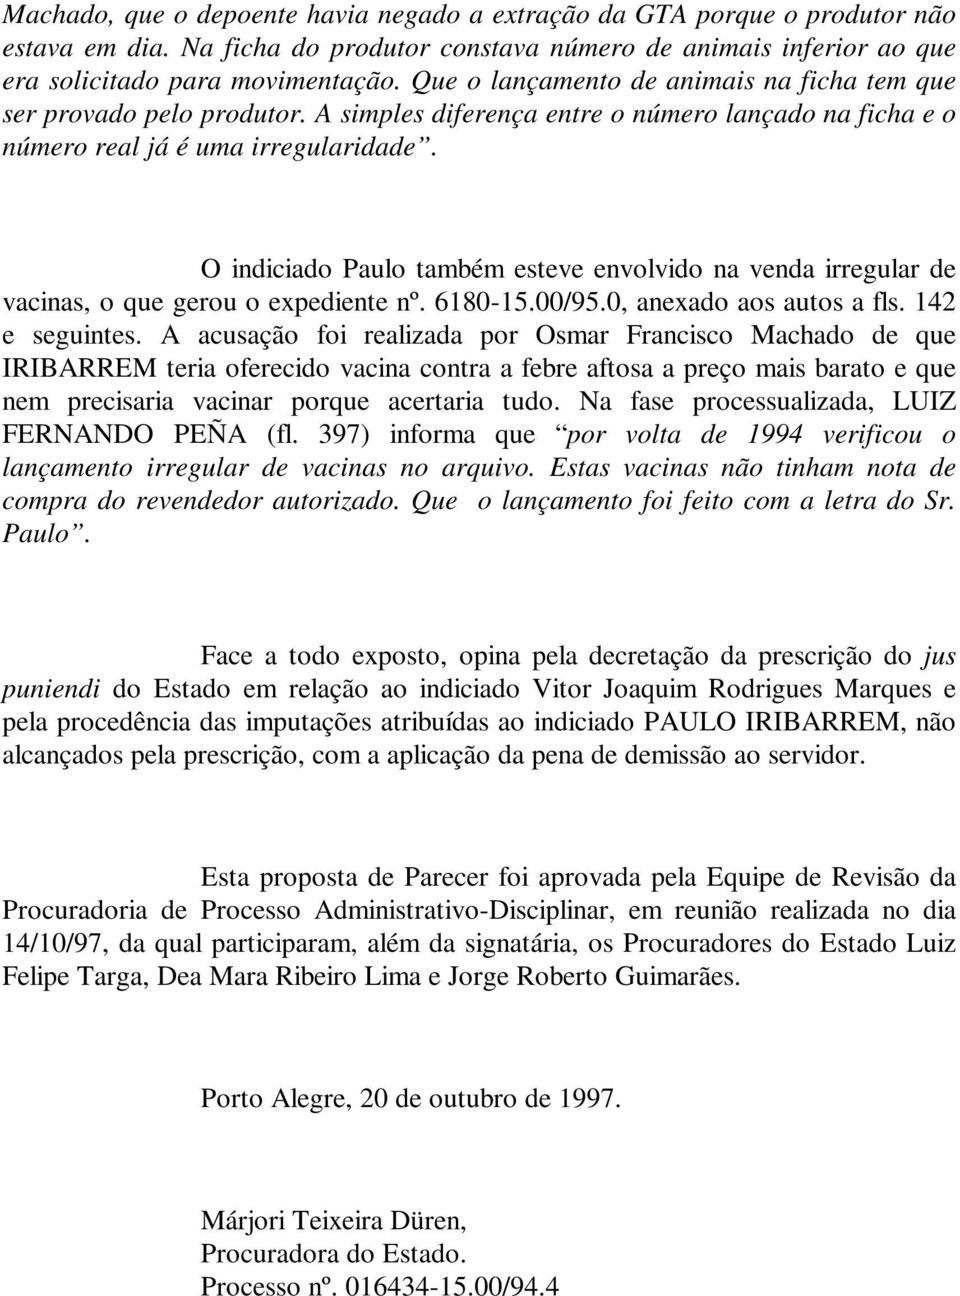 O indiciado Paulo também esteve envolvido na venda irregular de vacinas, o que gerou o expediente nº. 6180-15.00/95.0, anexado aos autos a fls. 142 e seguintes.